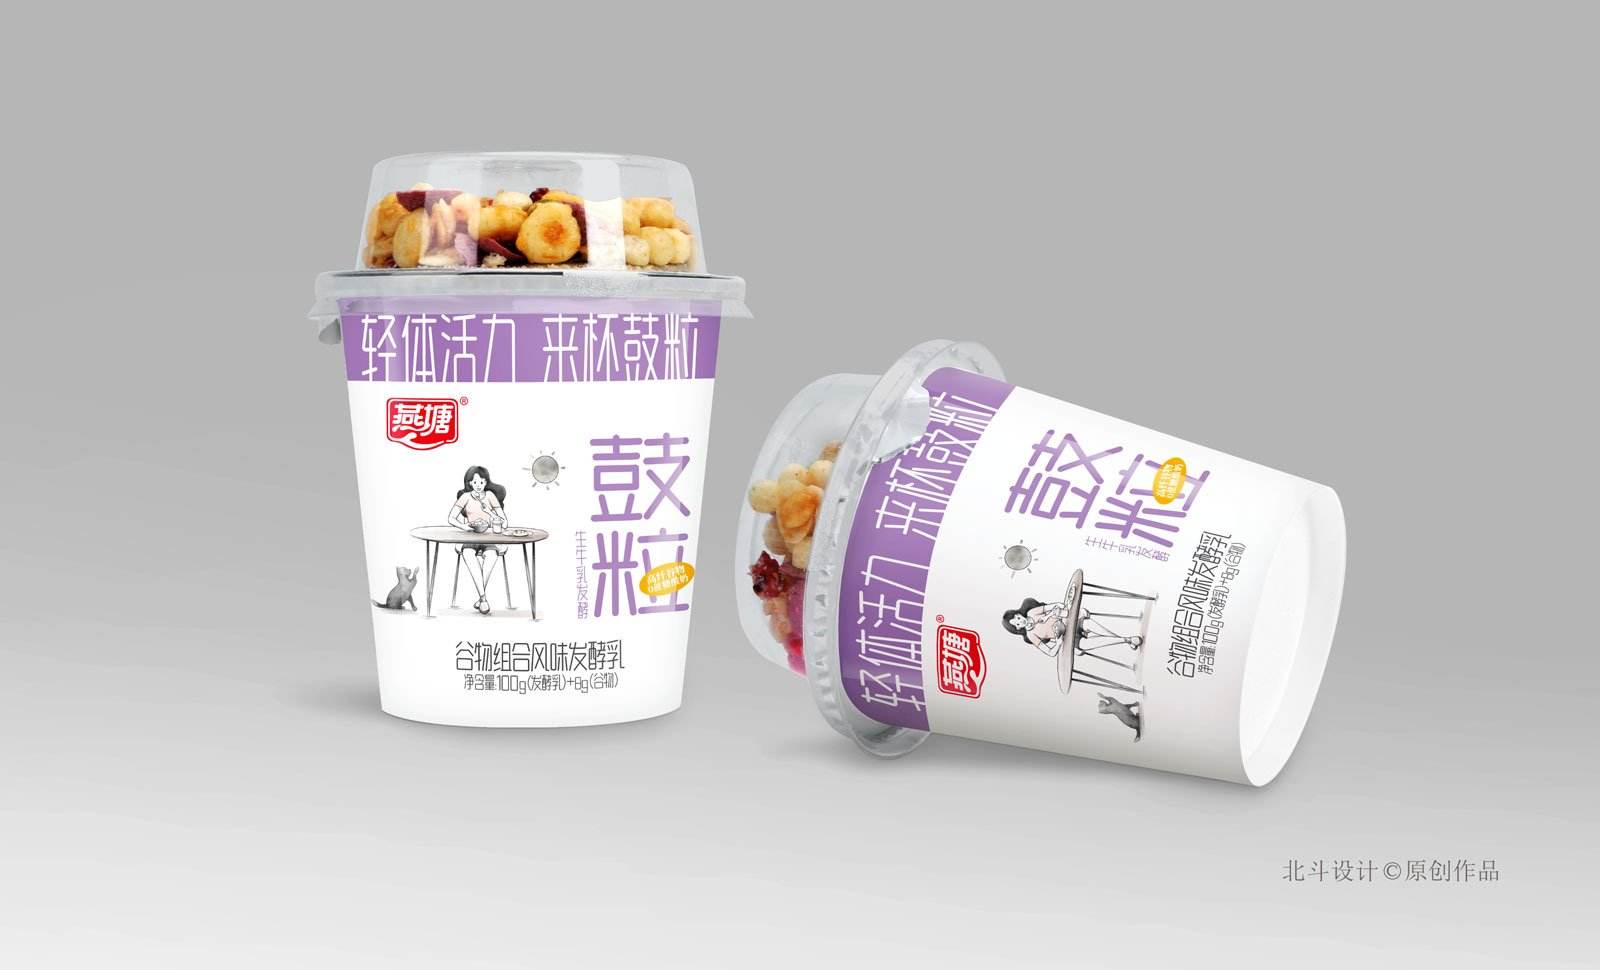 燕塘谷粒酸奶包装设计x北斗设计原创作品 飞特网 会员原创食品包装设计